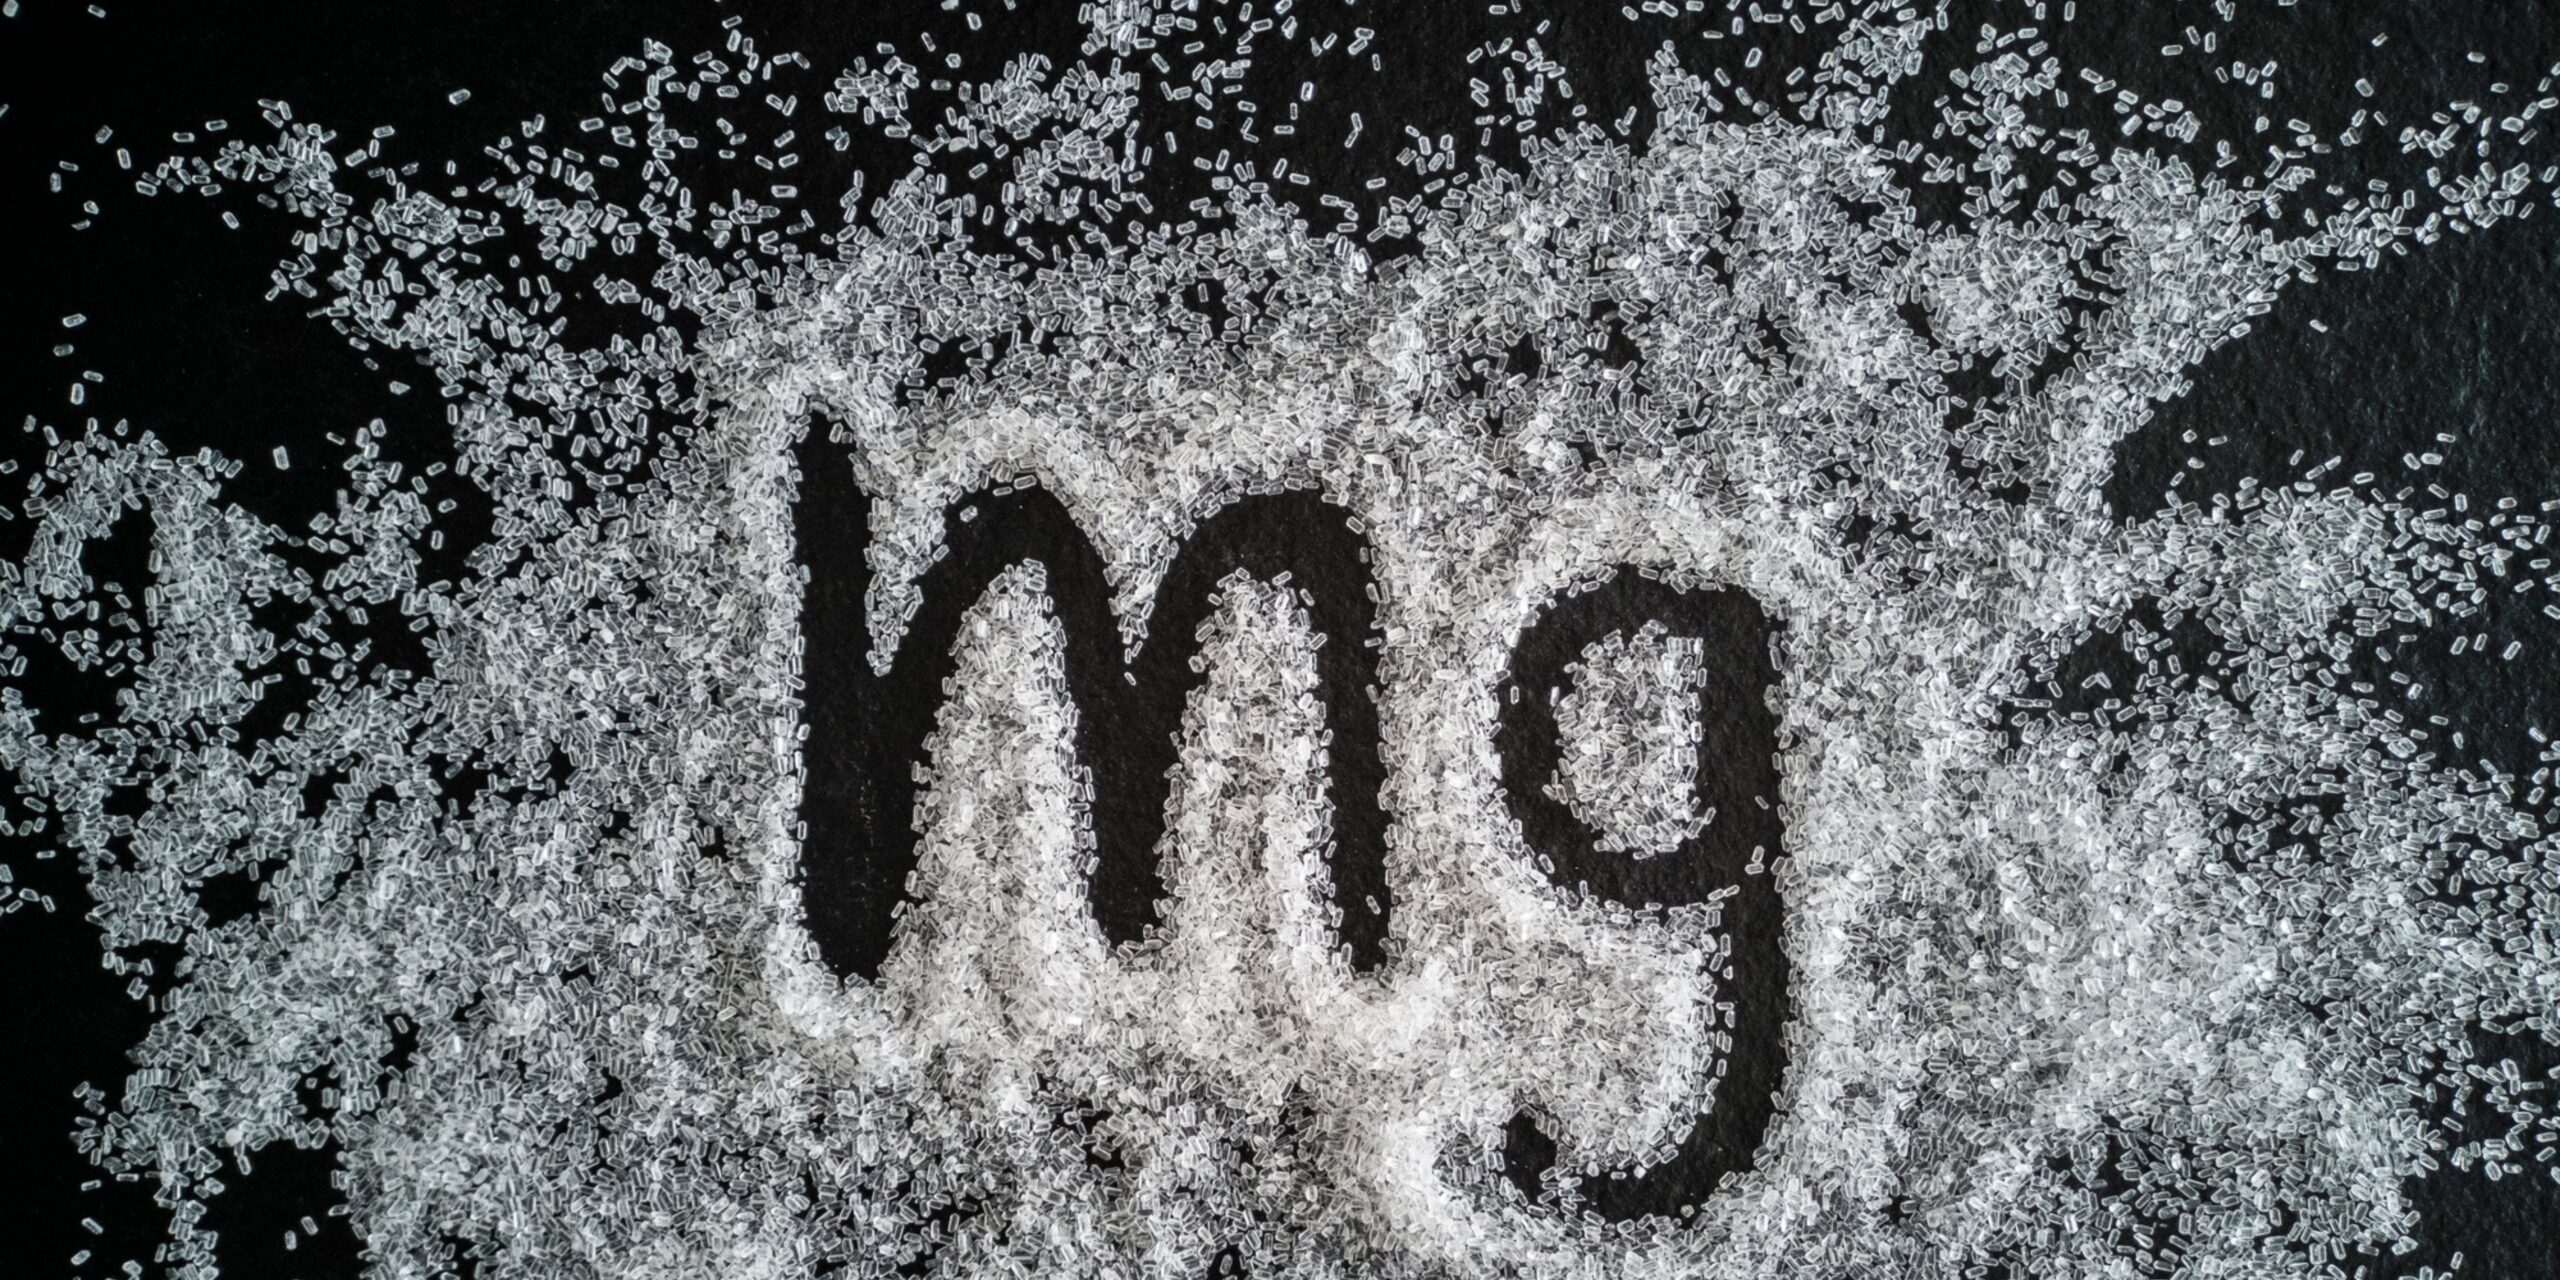 Magnificent Magnesium!